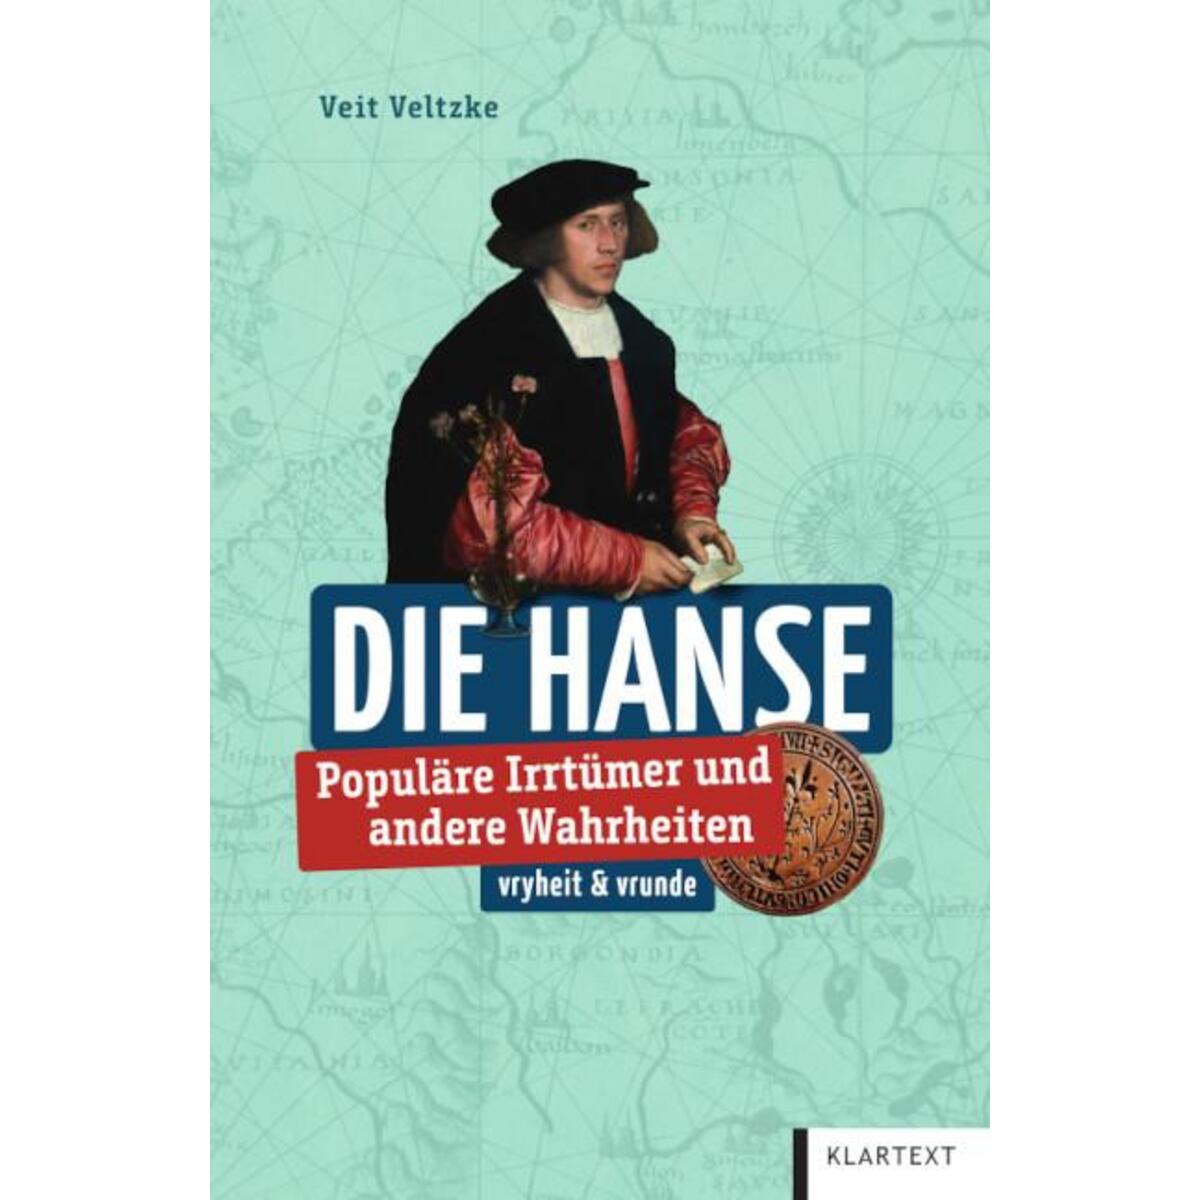 Hanse von Klartext Verlag